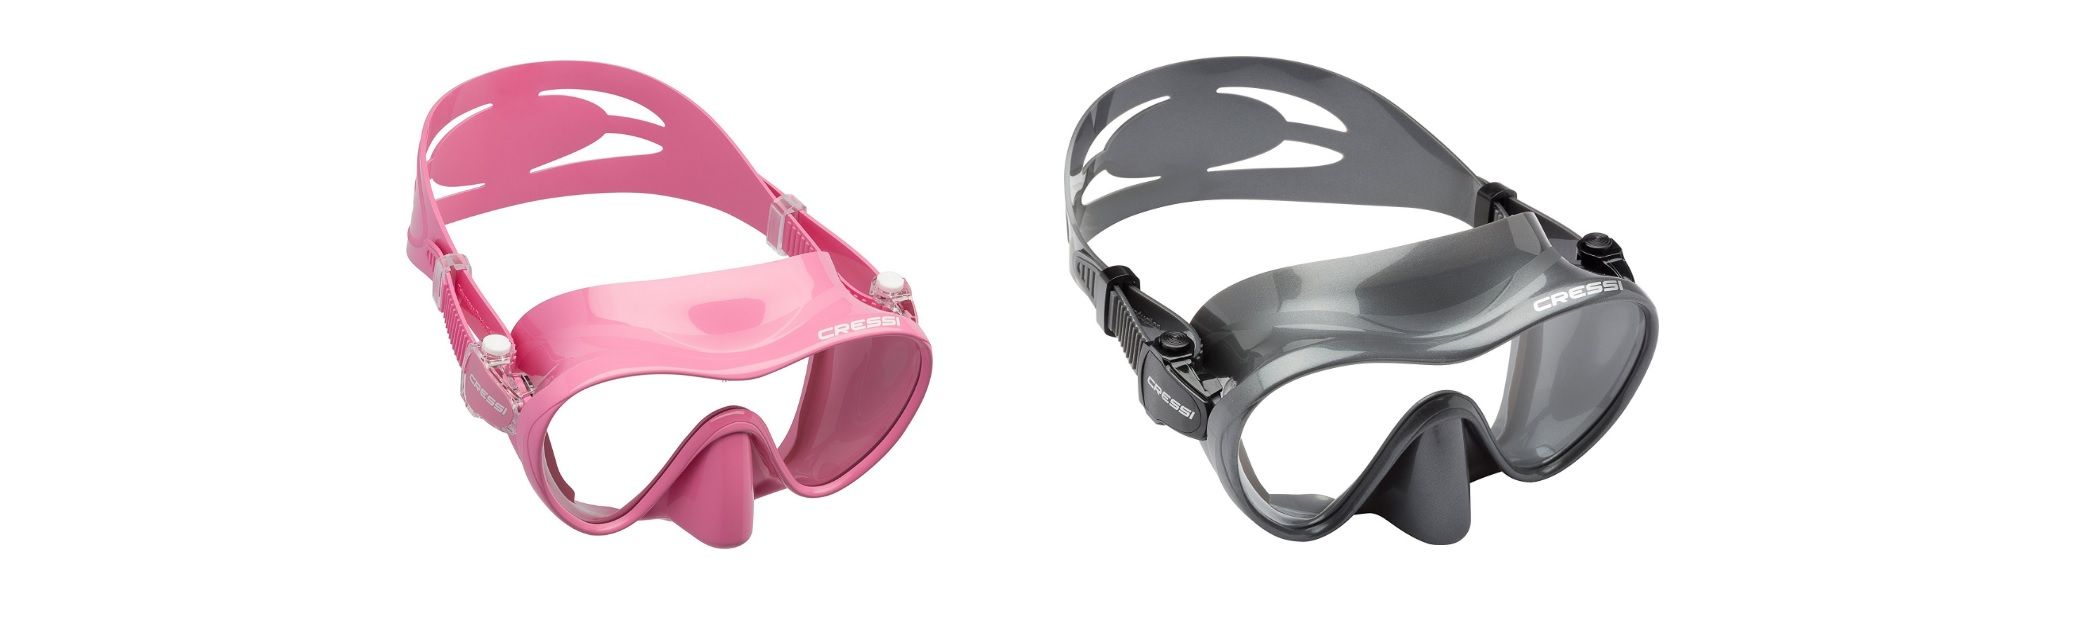 ¡Chollo! Gafas de buceo Cressi F1 por sólo 12,99€  ¡En varios colores!